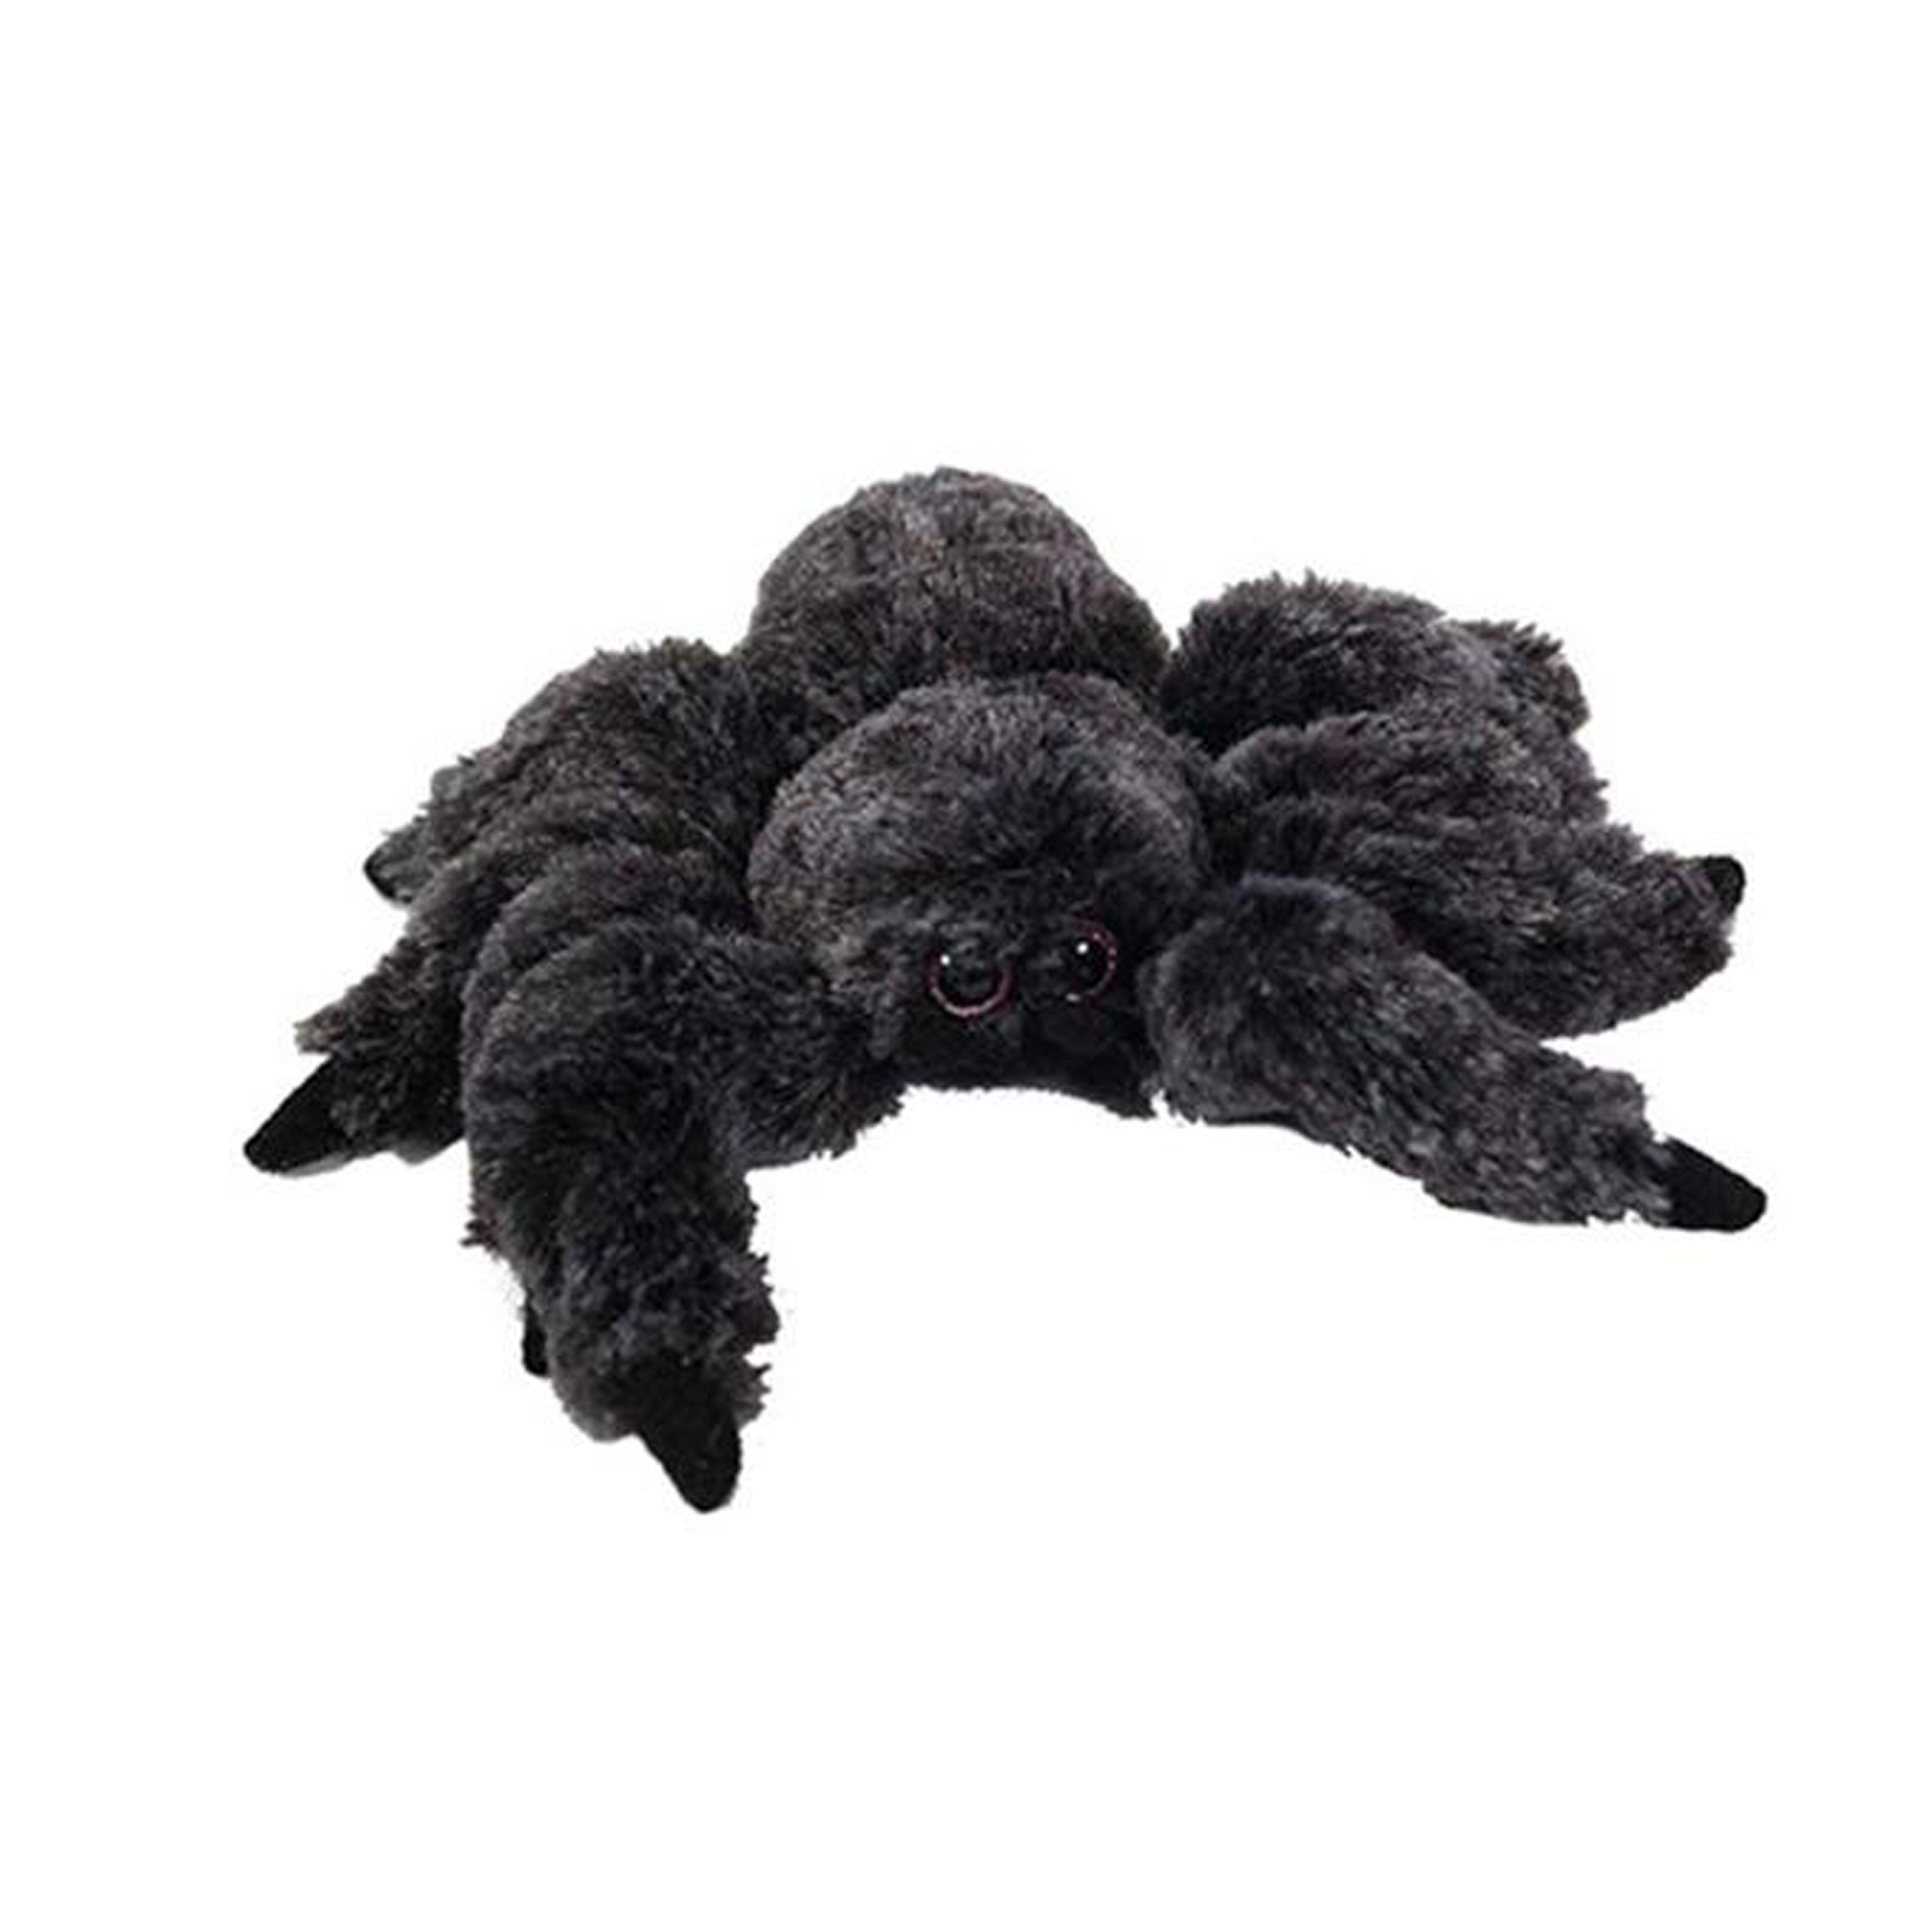 Knuffeldier Vogelspin zachte pluche stof zwart premium kwaliteit knuffels 13 cm